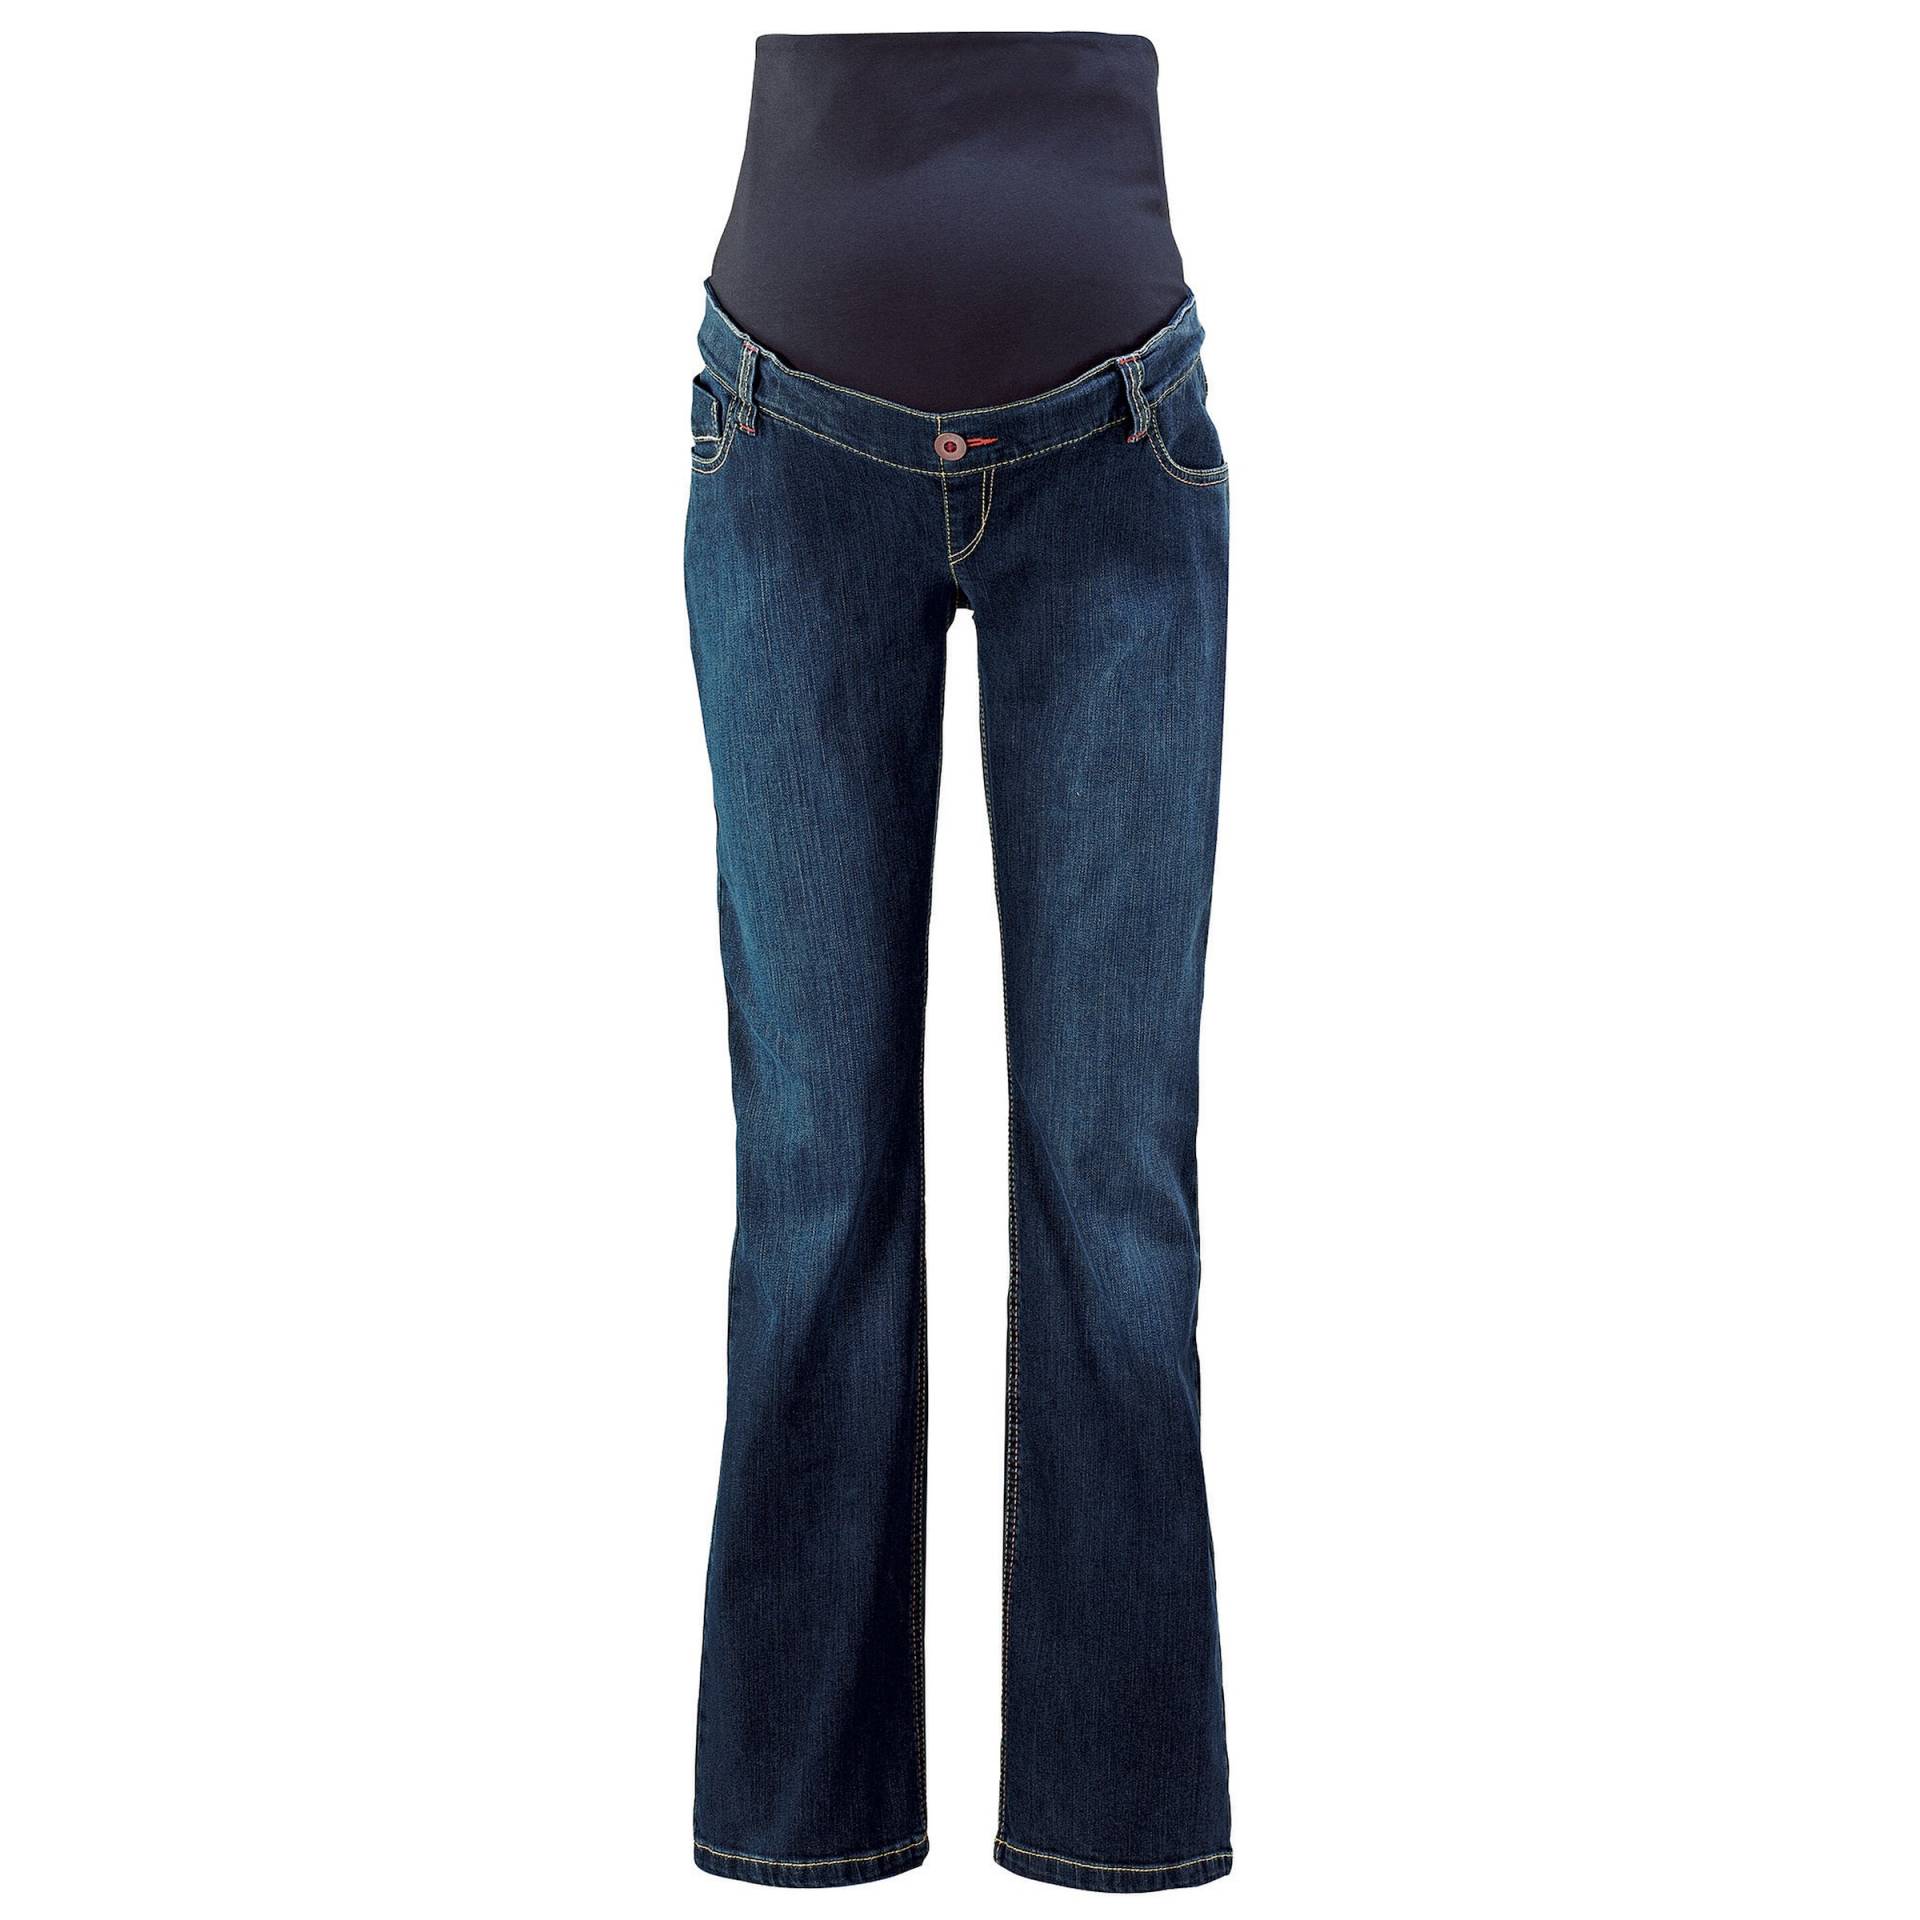 Umstands-Jeans Länge 32 von 2hearts